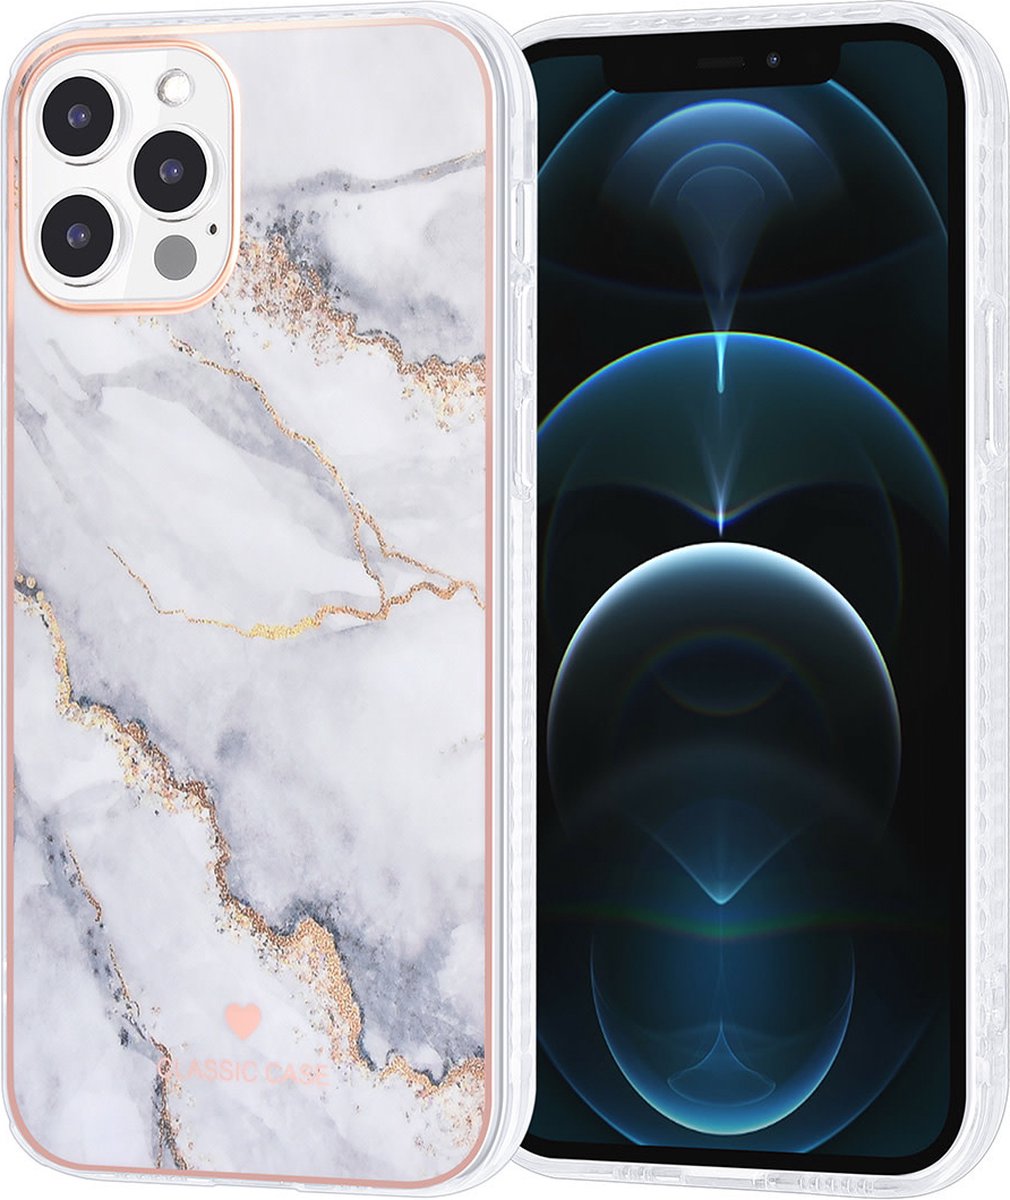 UNIQ Classic Case iPhone 12 - 12 Pro TPU Backcover hoesje - Marble White